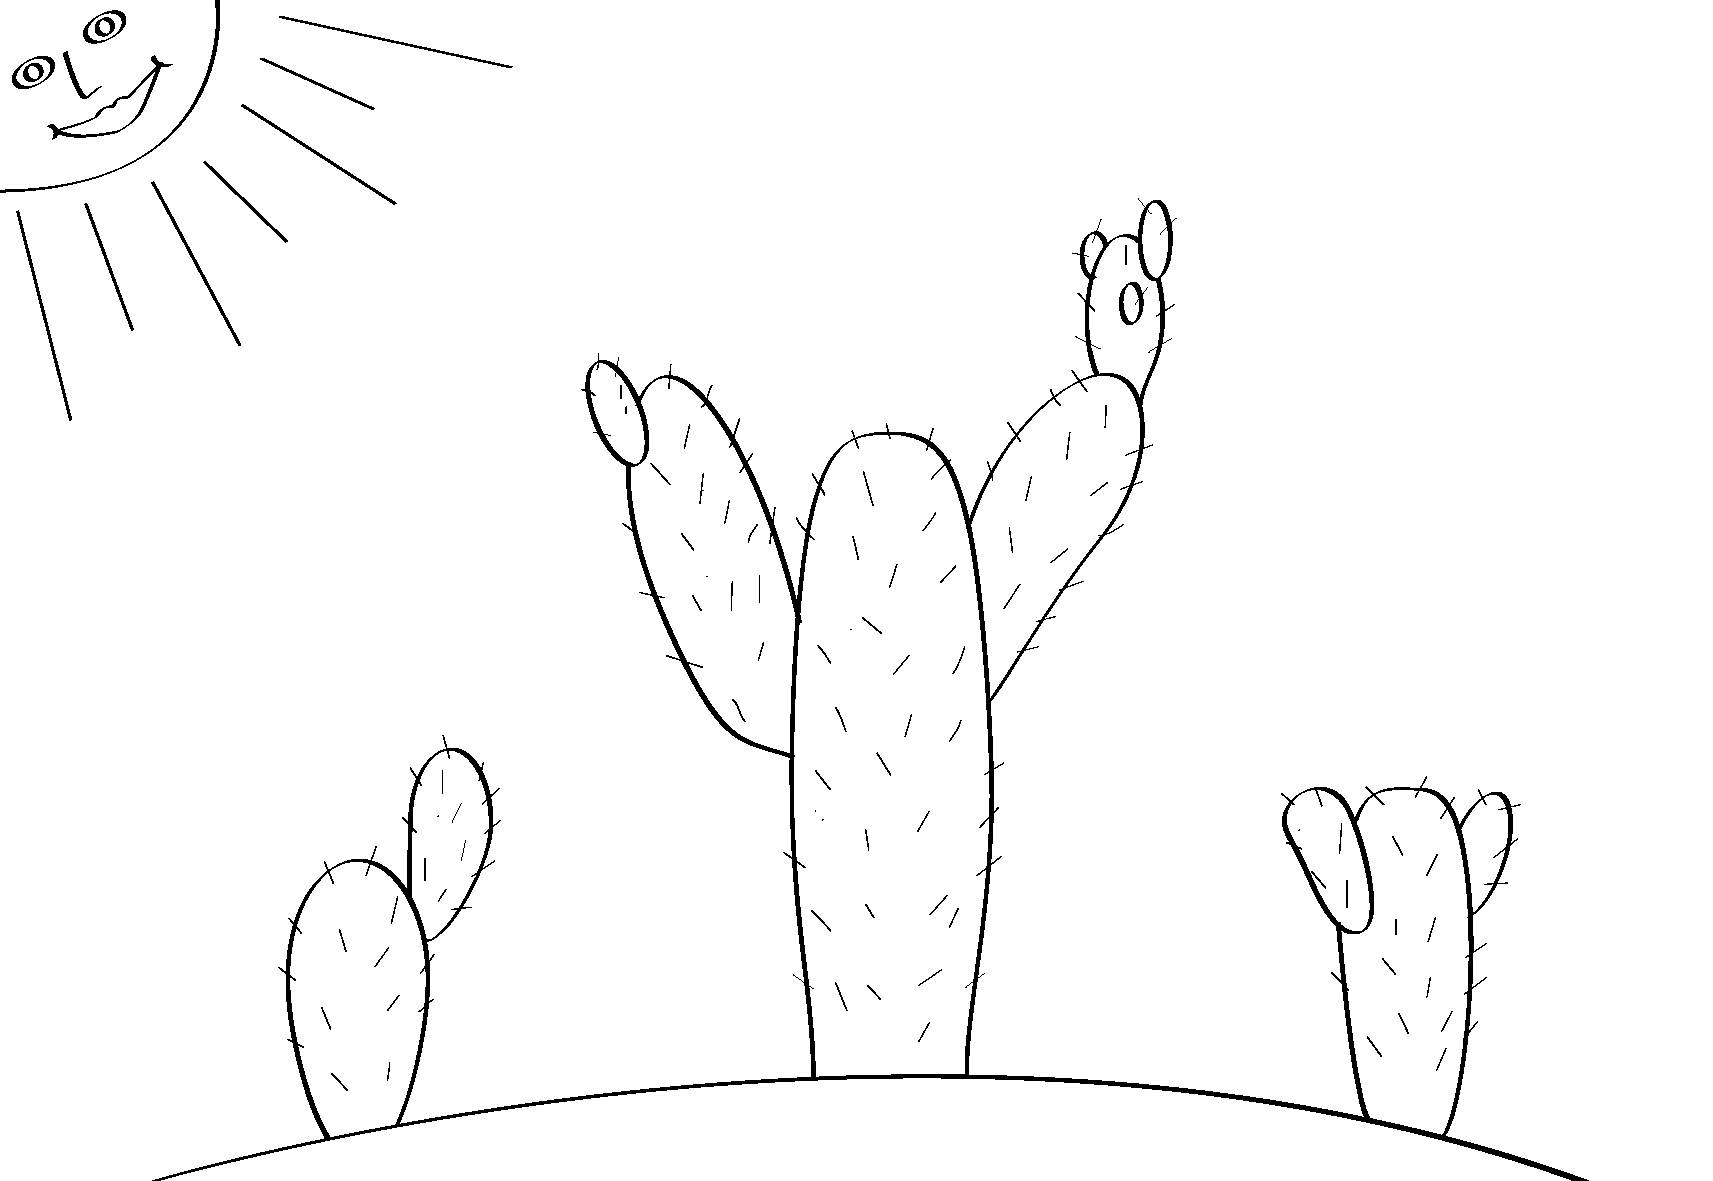 Cactus in the desert